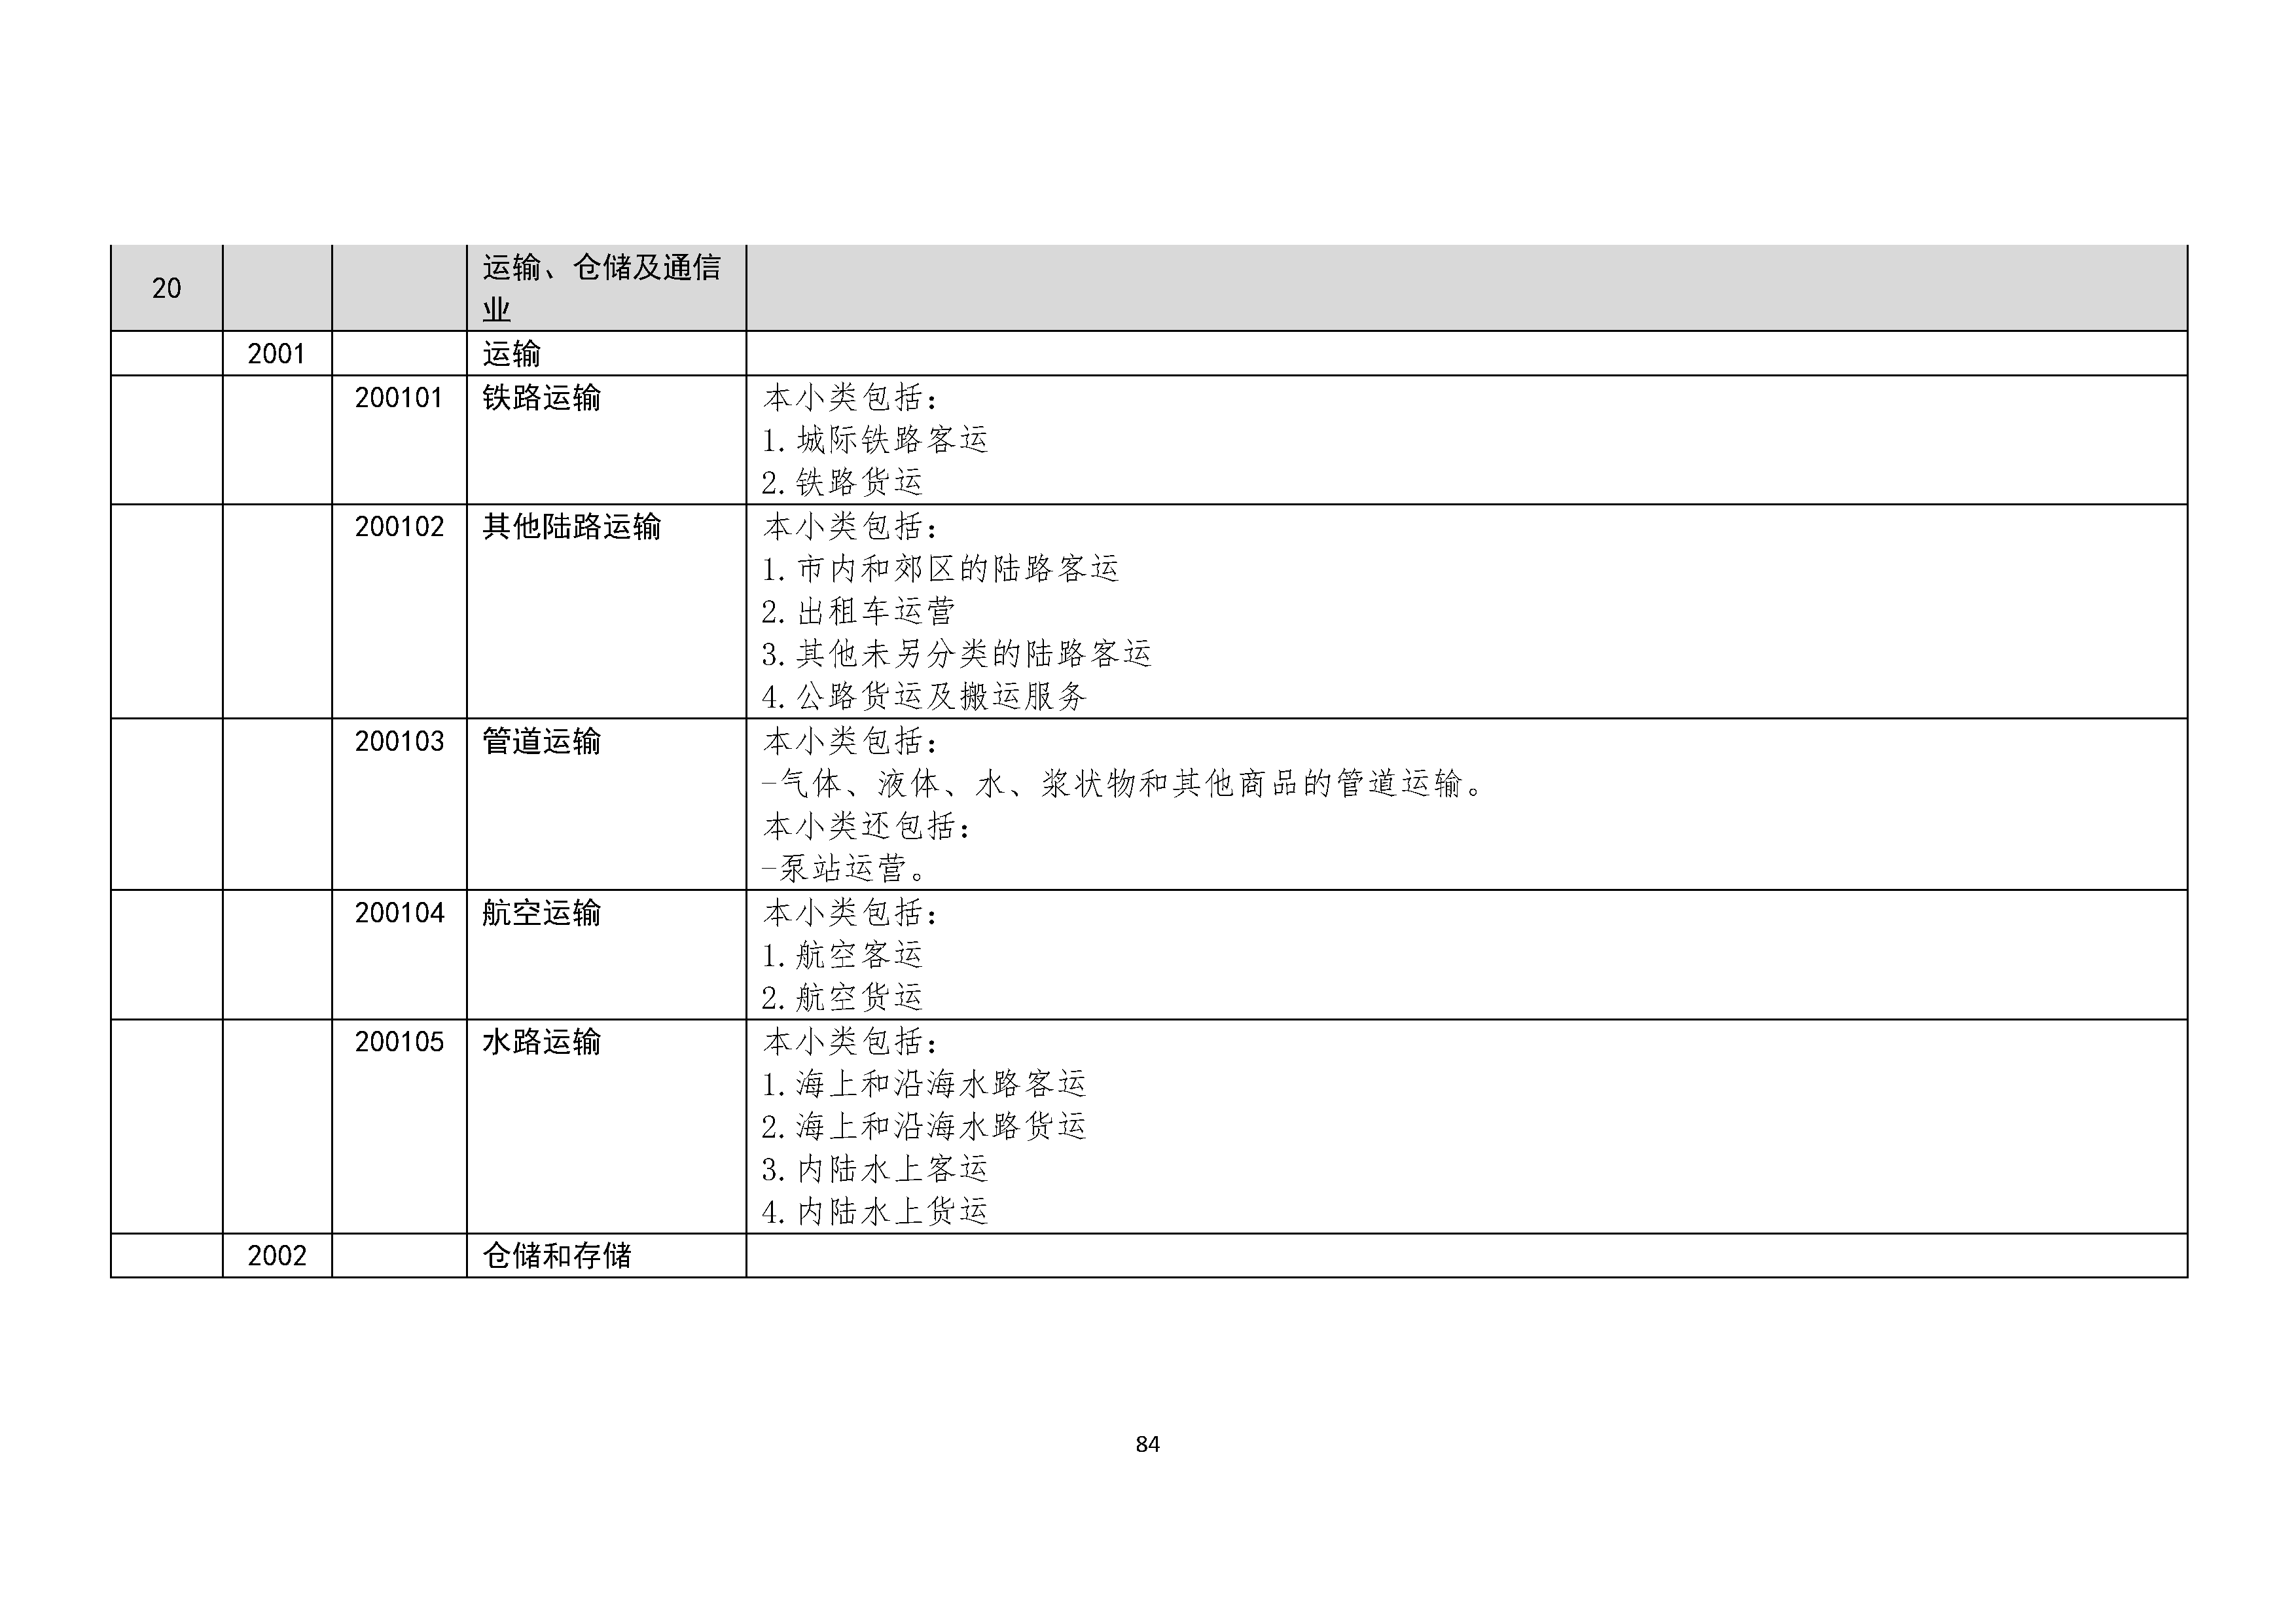 B.6《中国核能行业协会供应商评价供应商分类及产品专业范围划分规定》_页面_085.png